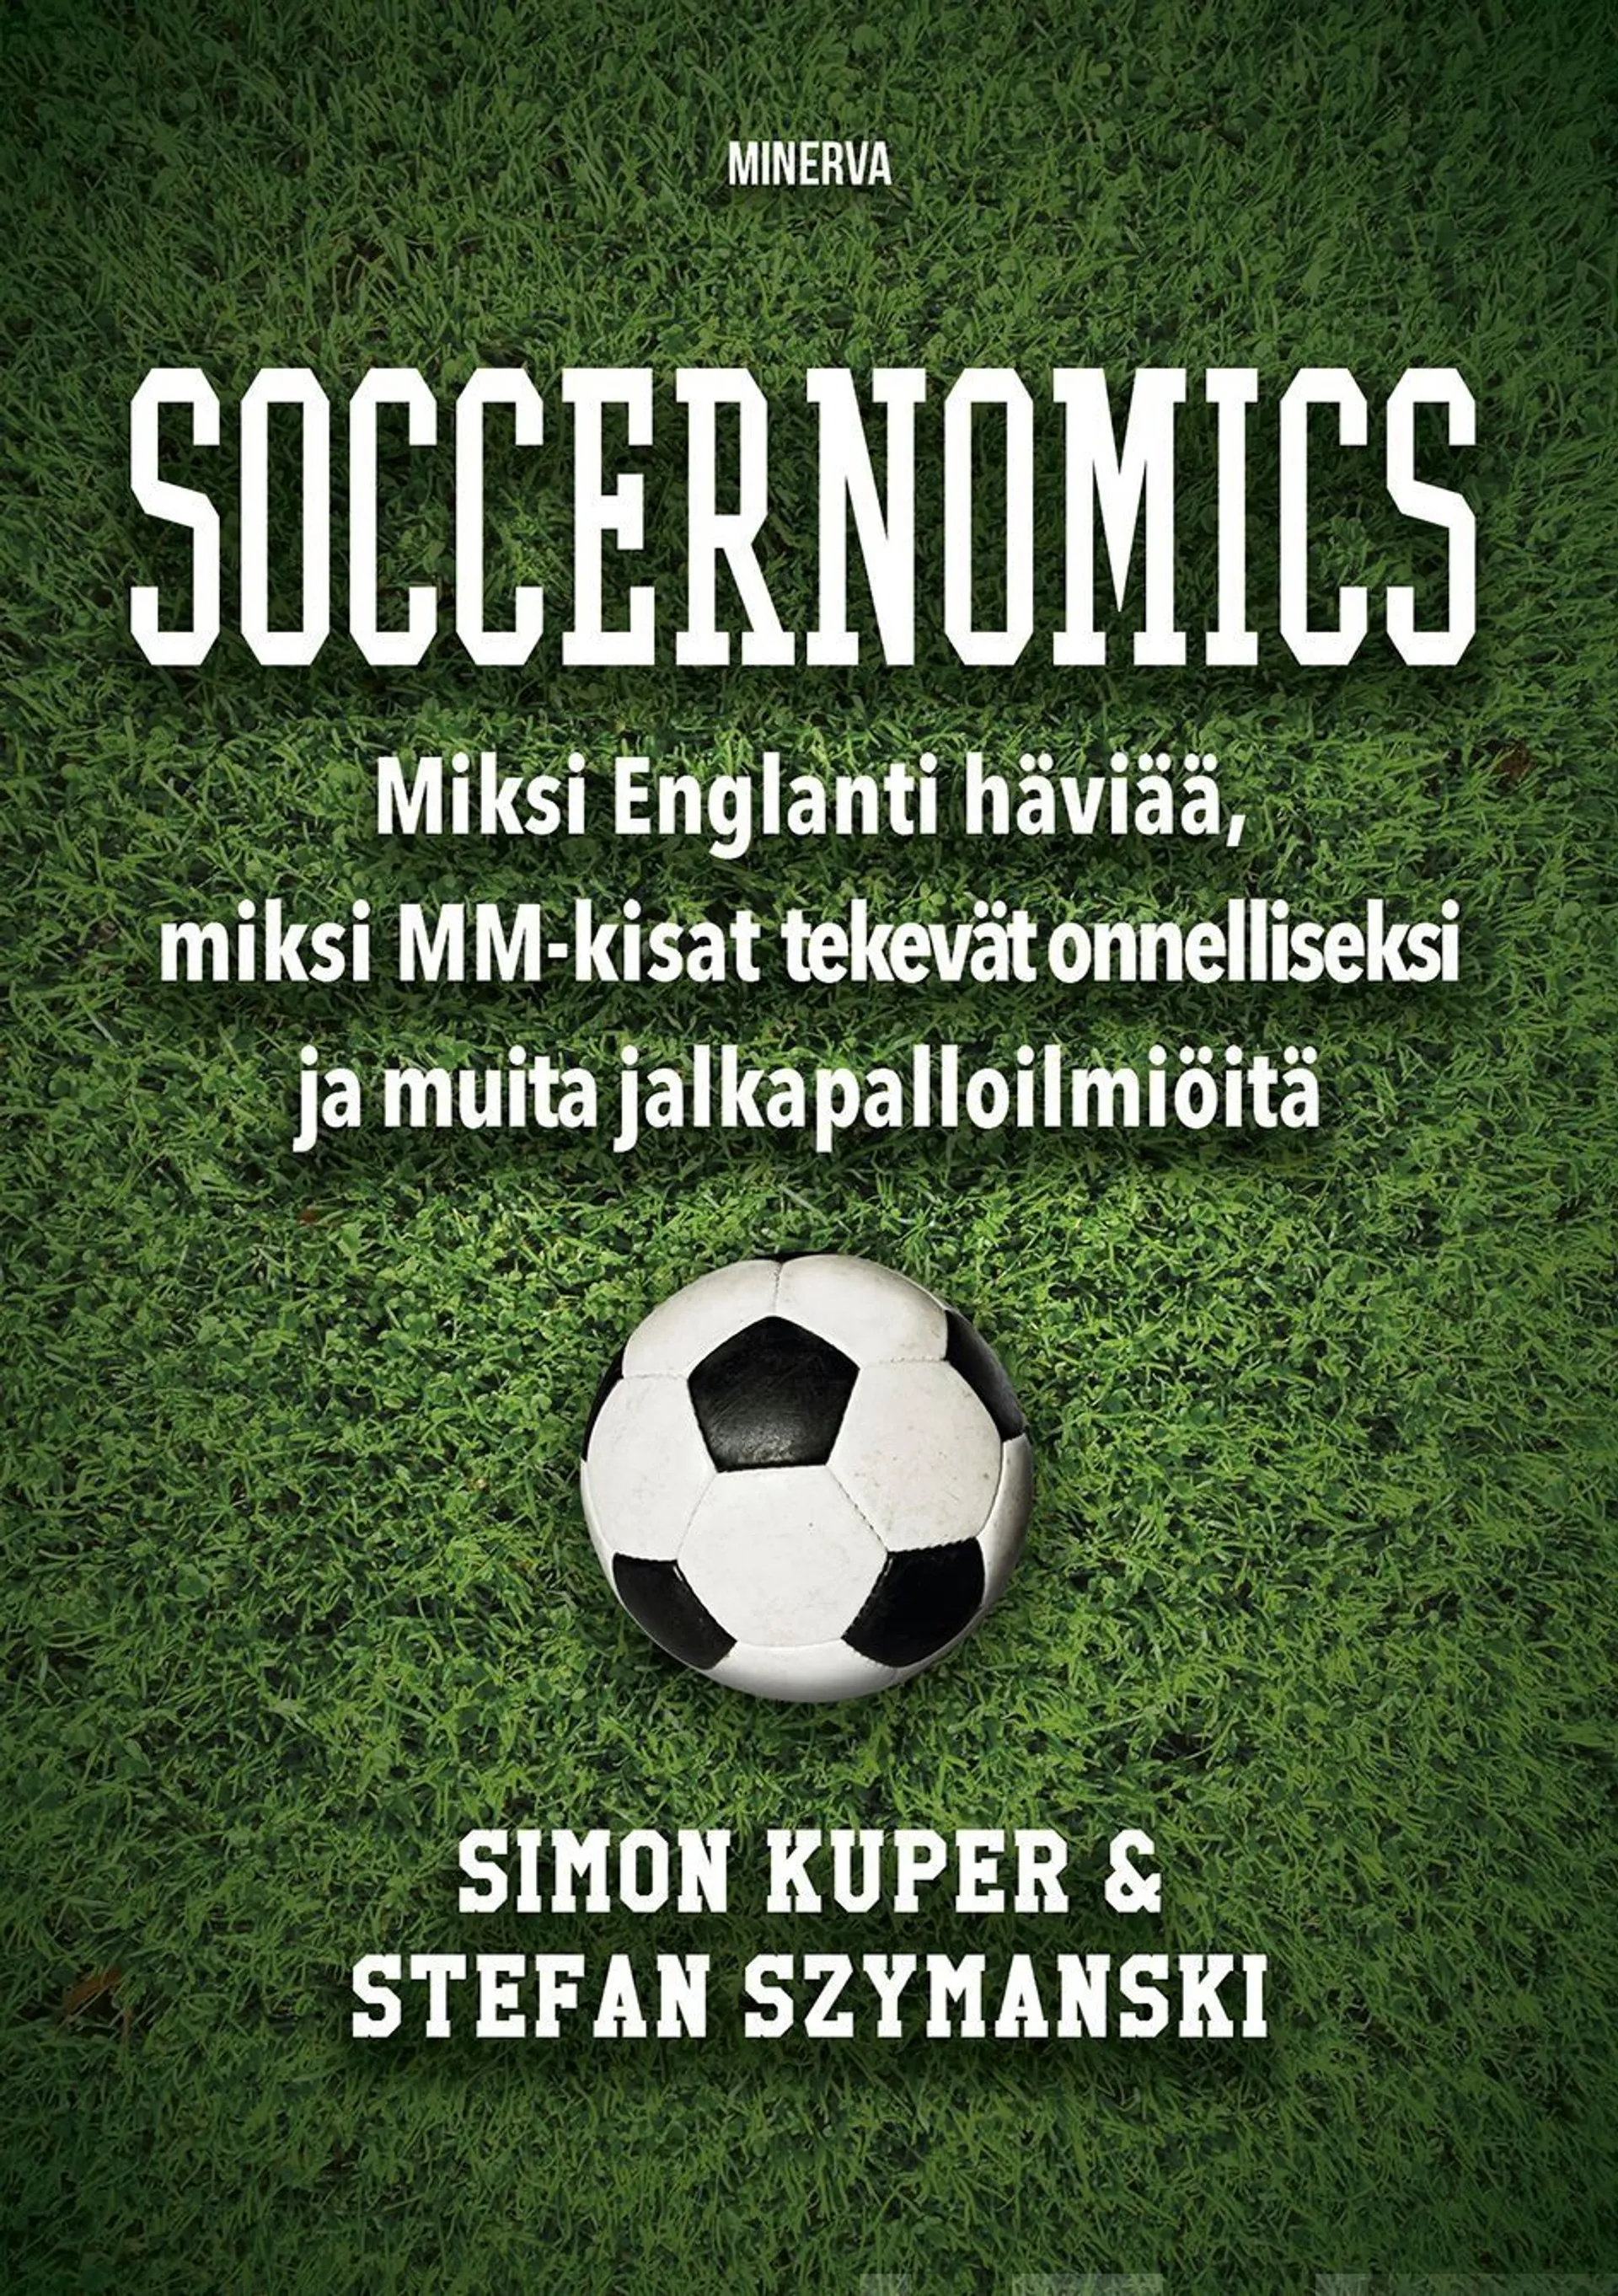 Kuper, Soccernomics - Miksi Englanti häviää MM-kisoissa, miksi MM-kisat lisäävät onnellisuutta ja muita ja jalkapalloa